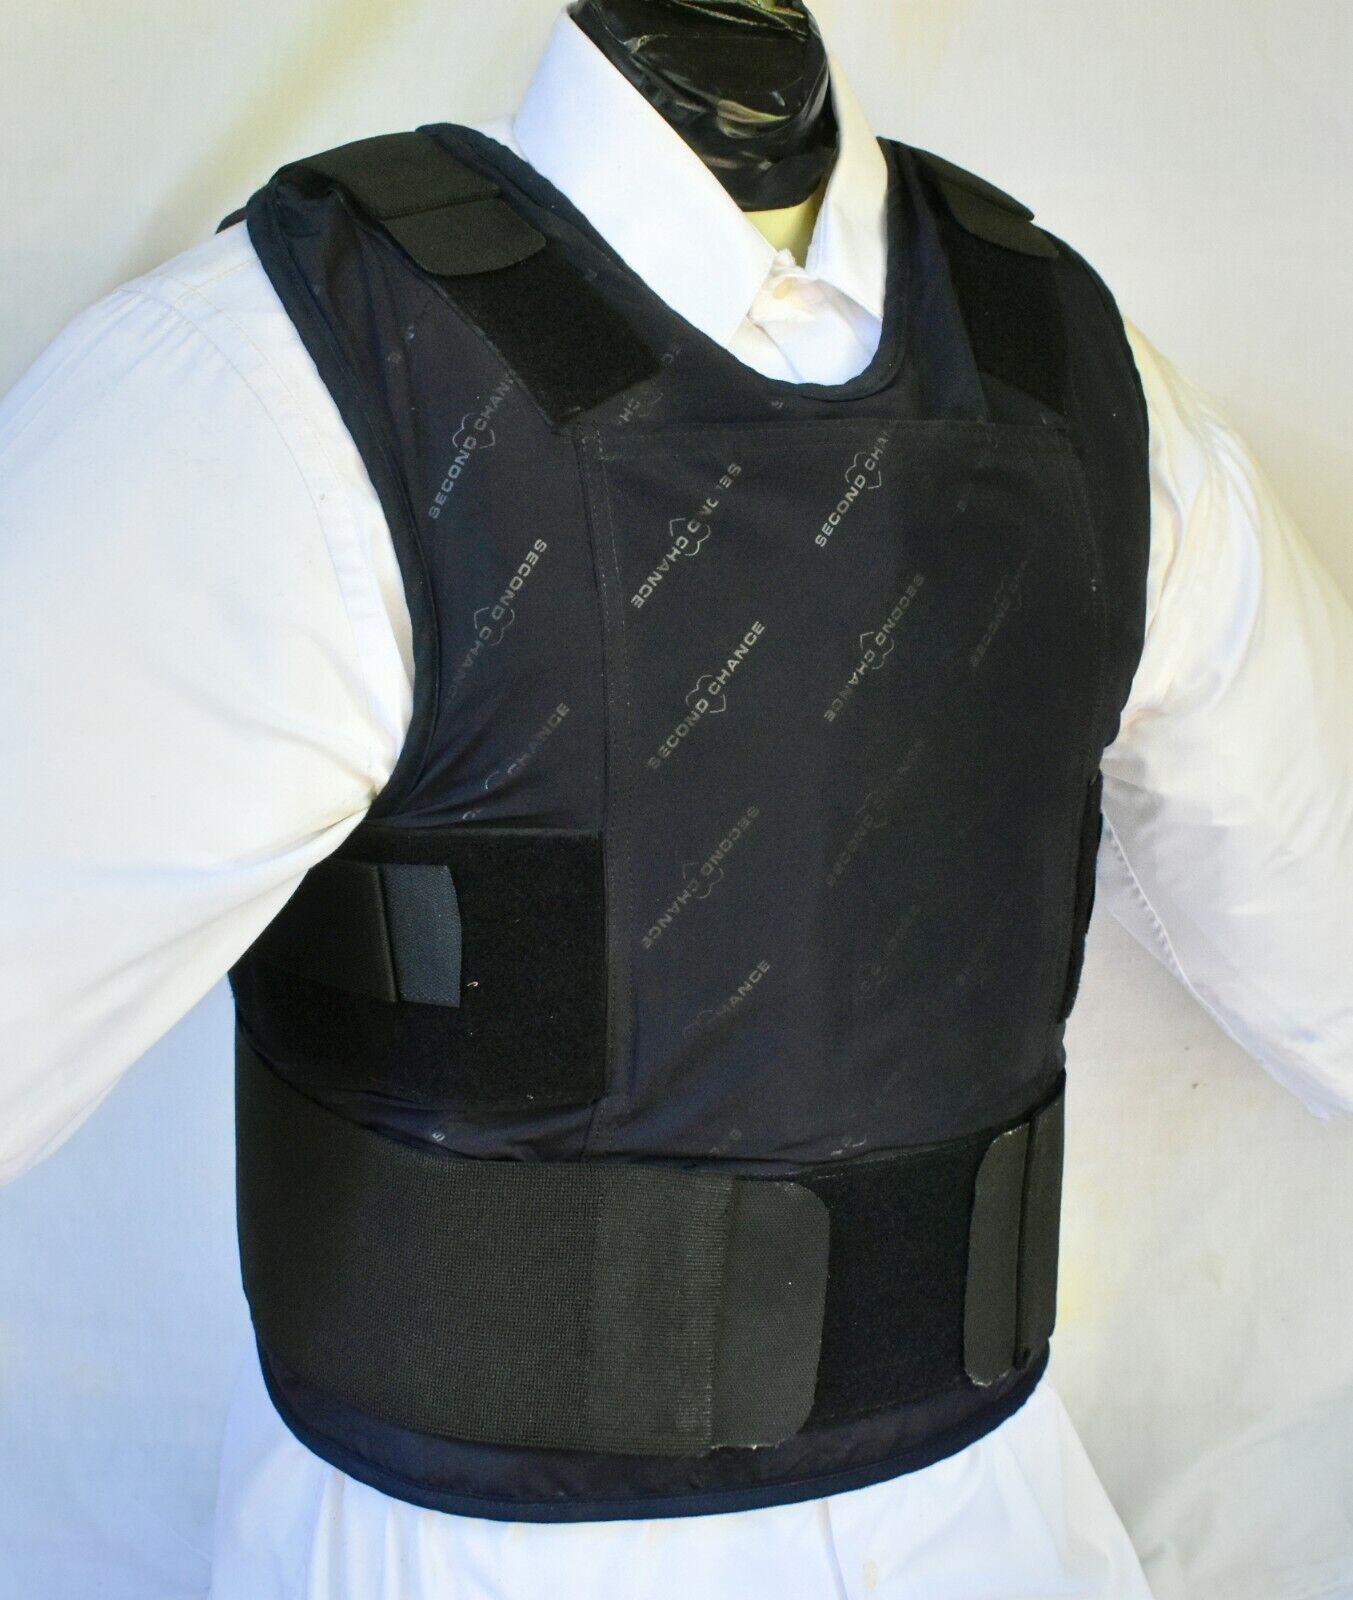 XL IIIA Lo Vis / Concealable Body Armor Carrier BulletProof Vest